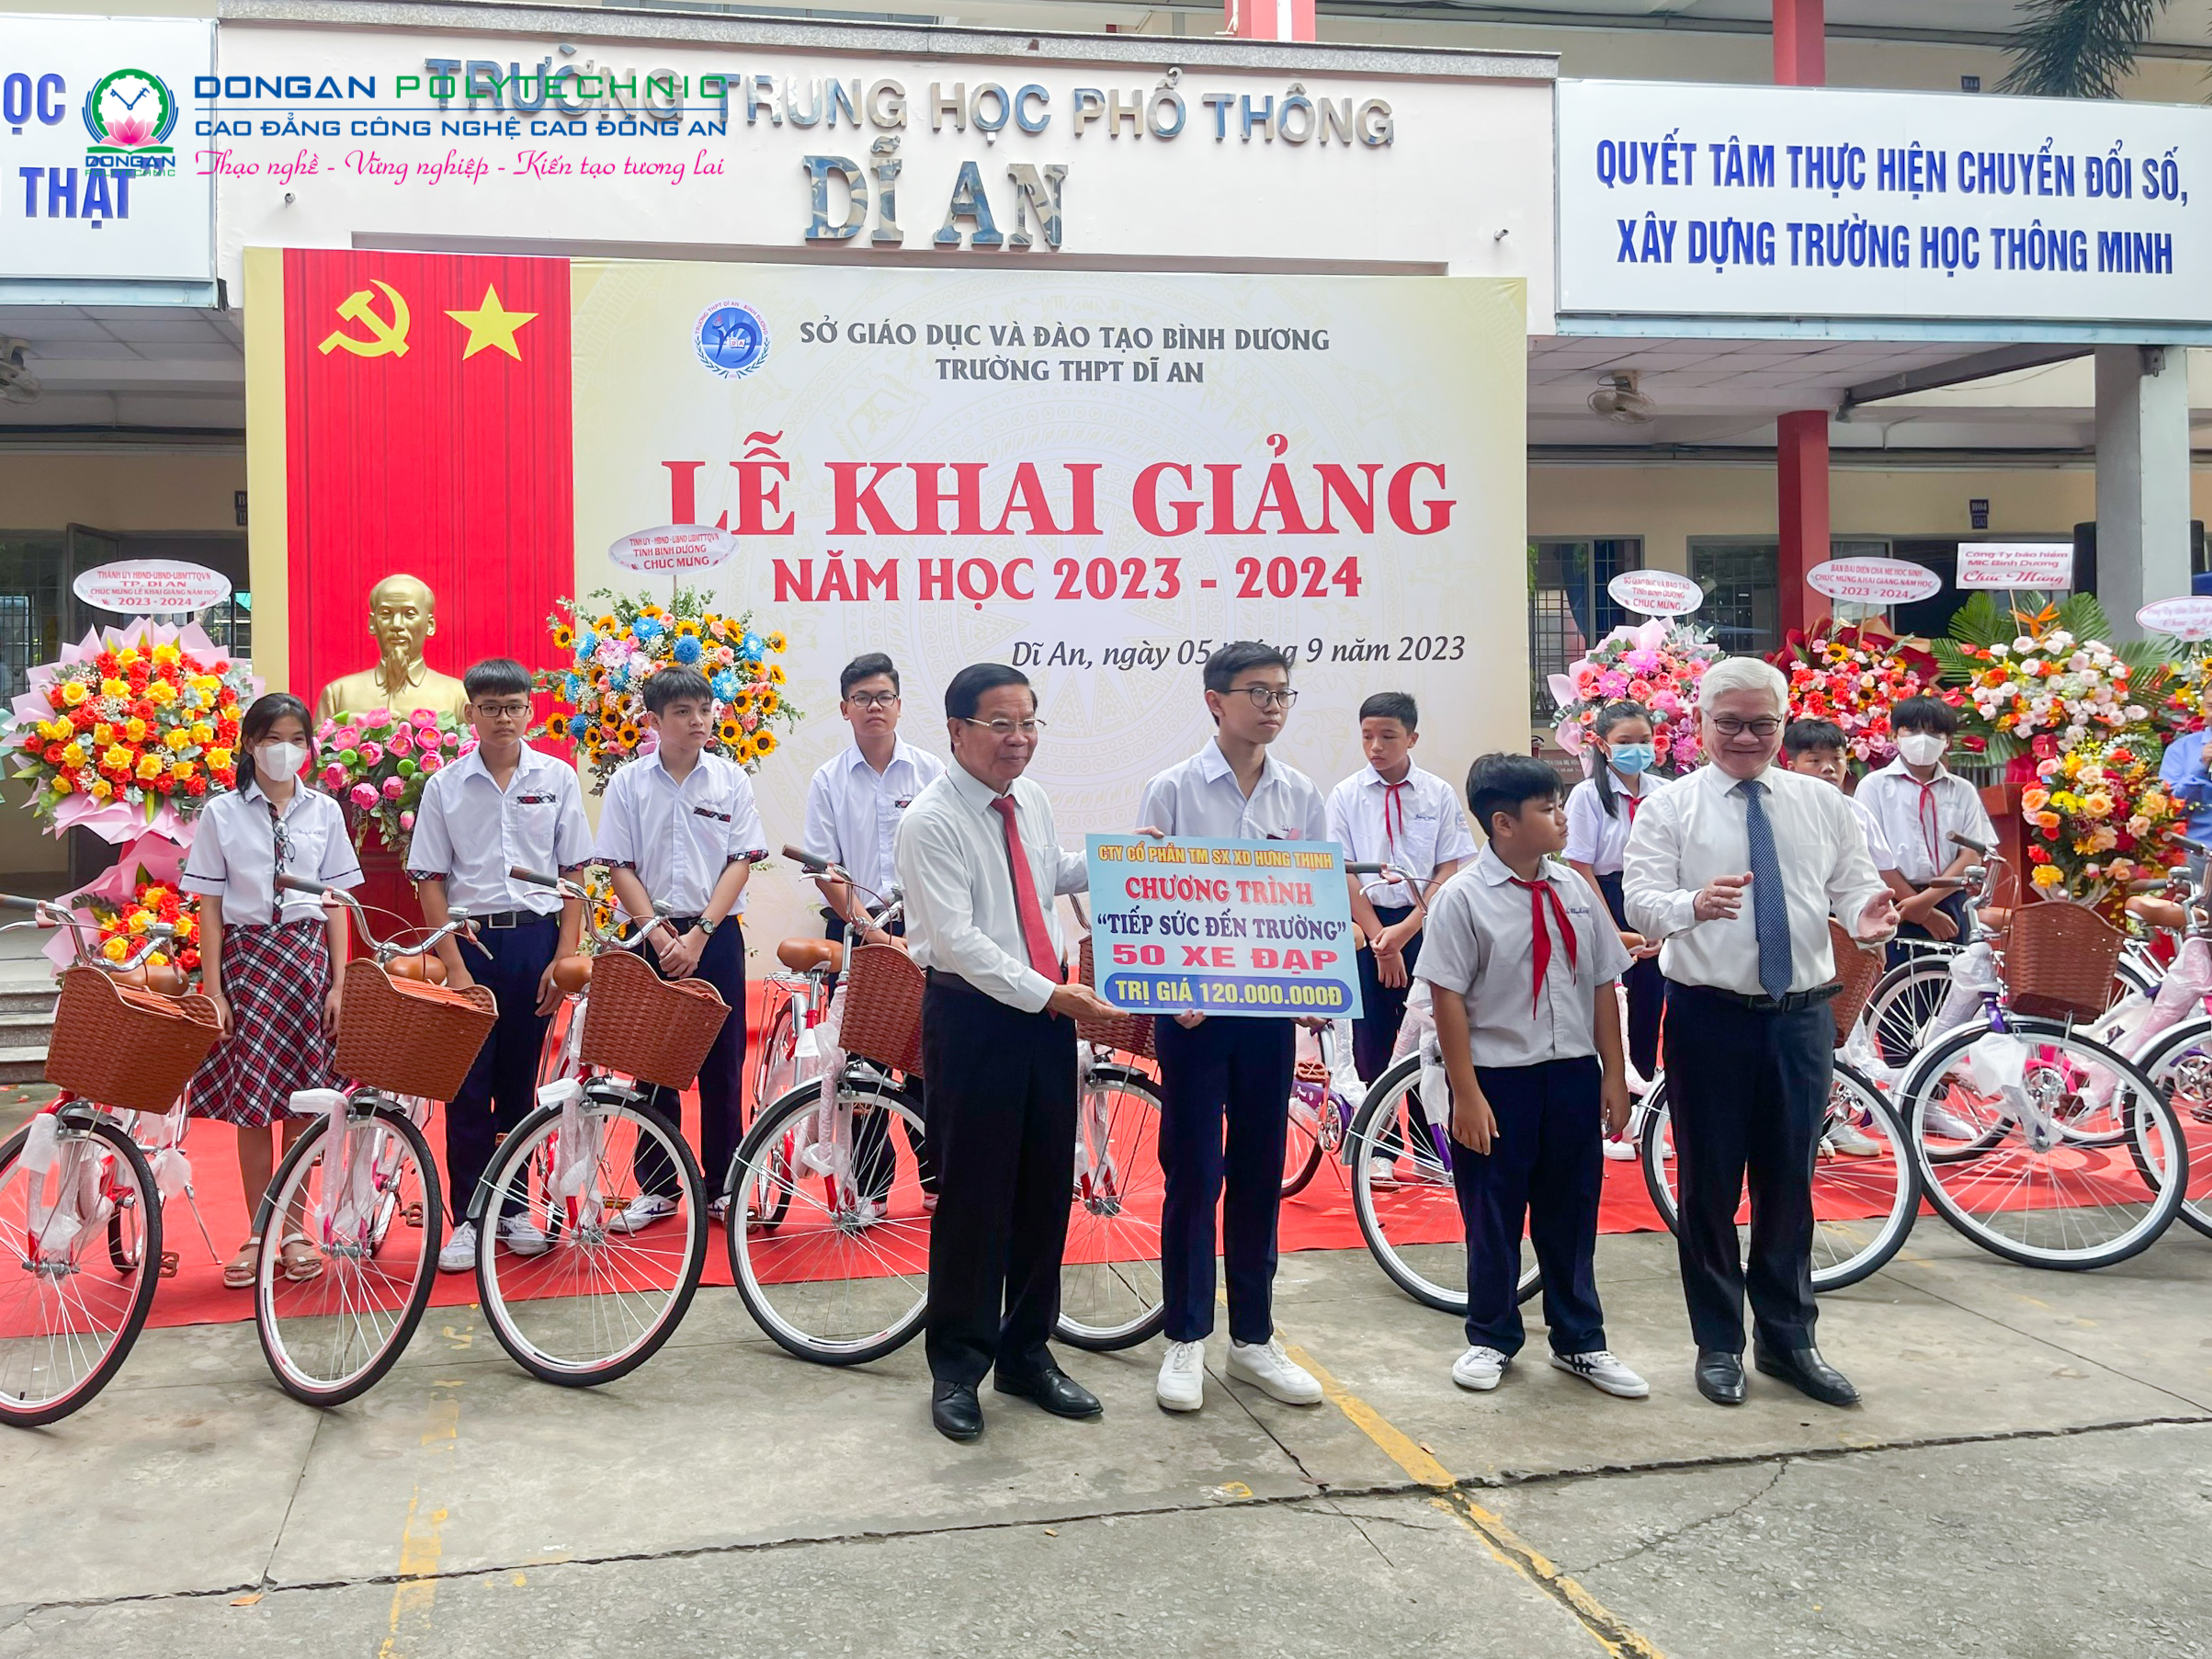 Chủ tịch HĐQT trường dự Lễ khai giảng và Trao tặng 50 xe đạp, tổng trị giá 120 triệu đồng cho Chương trình “TIẾP SỨC ĐẾN TRƯỜNG” tại Trường THPT Dĩ An, Bình Dương